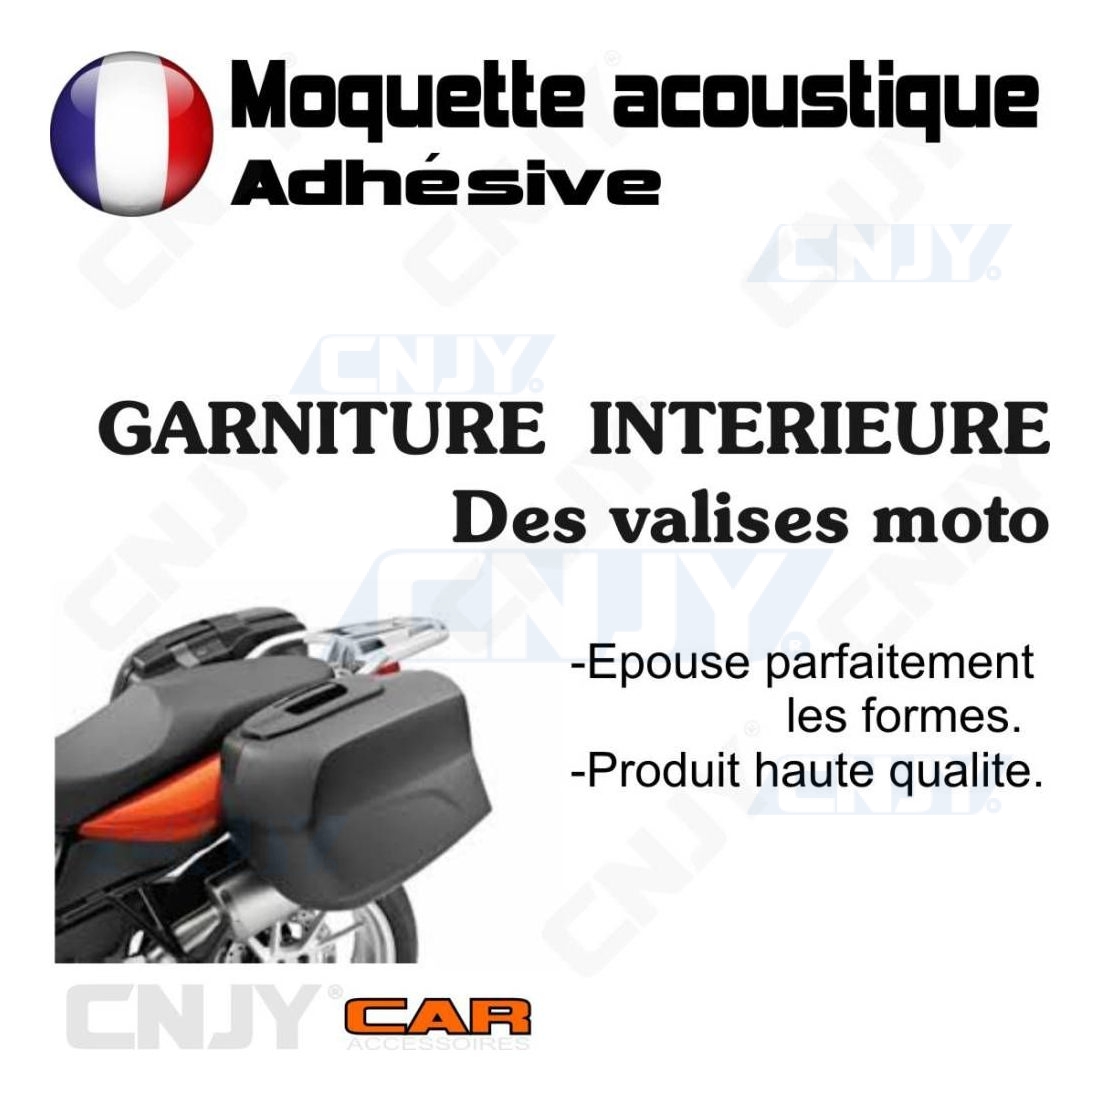 Moquette acoustique adhésive GRIS pour sellerie auto, camion, van aménagé,  camping car, fourgon utilitaire.